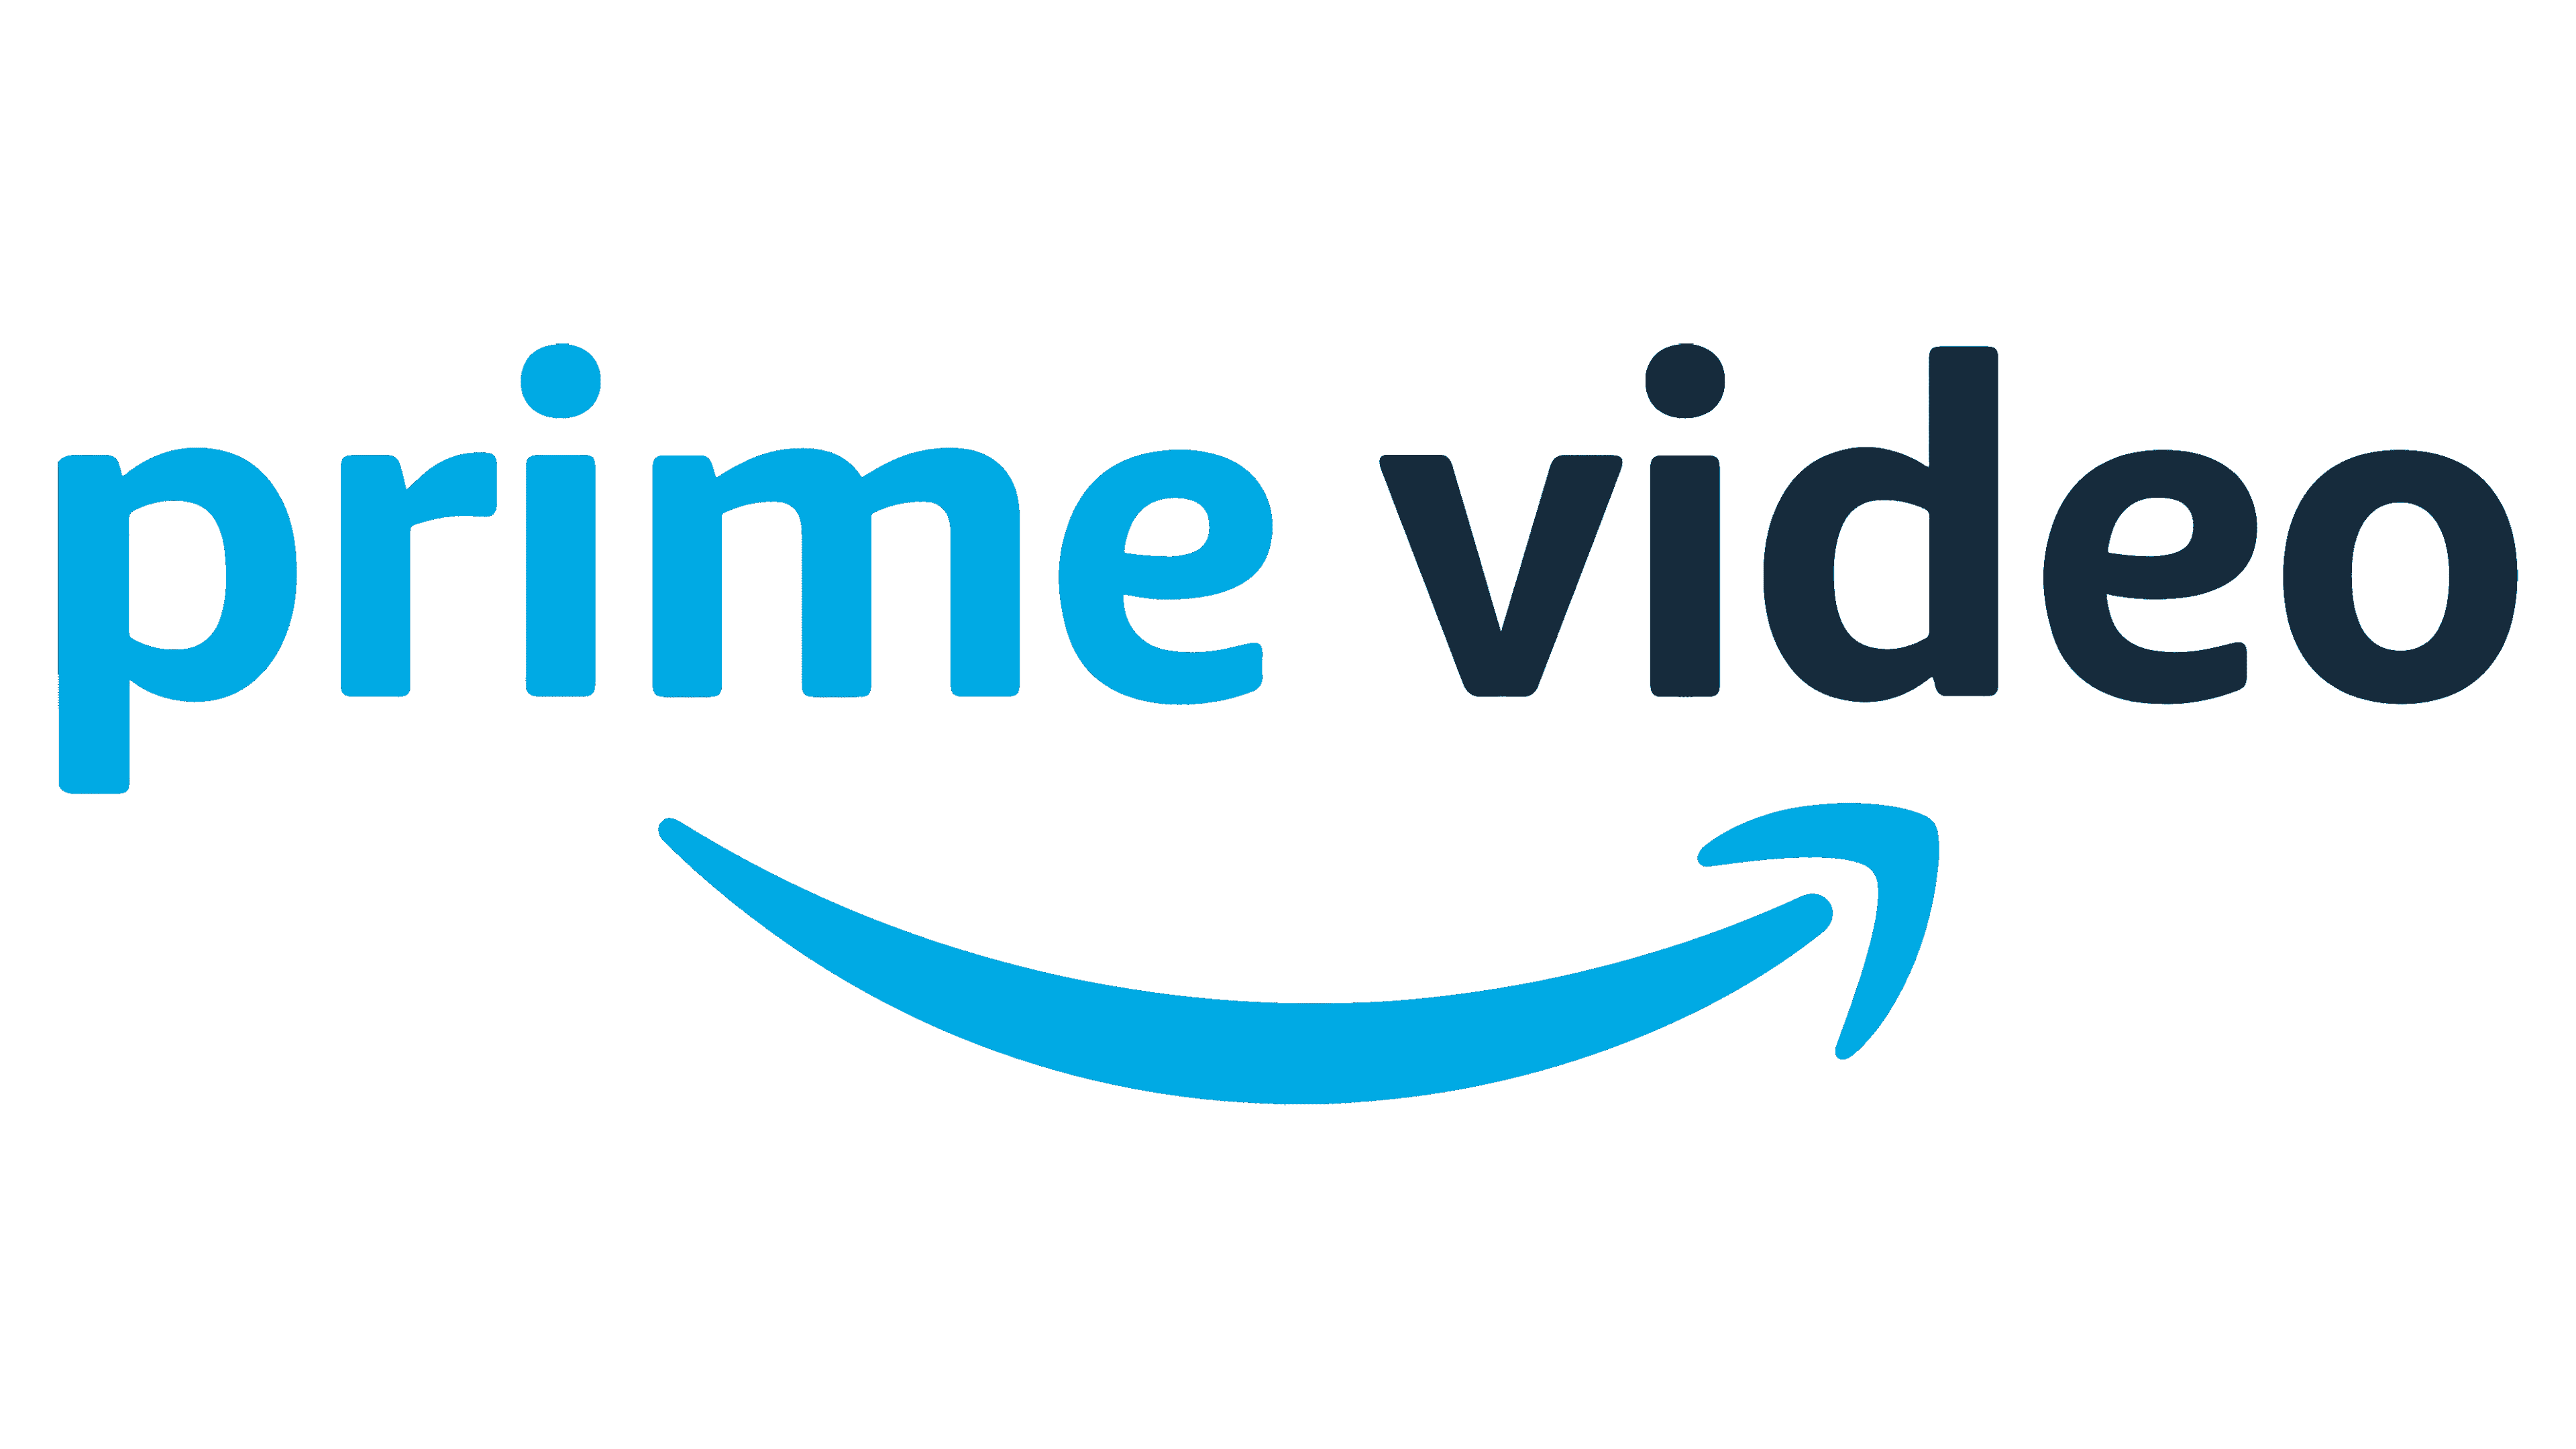 Amazon Prime Video Logo Logo